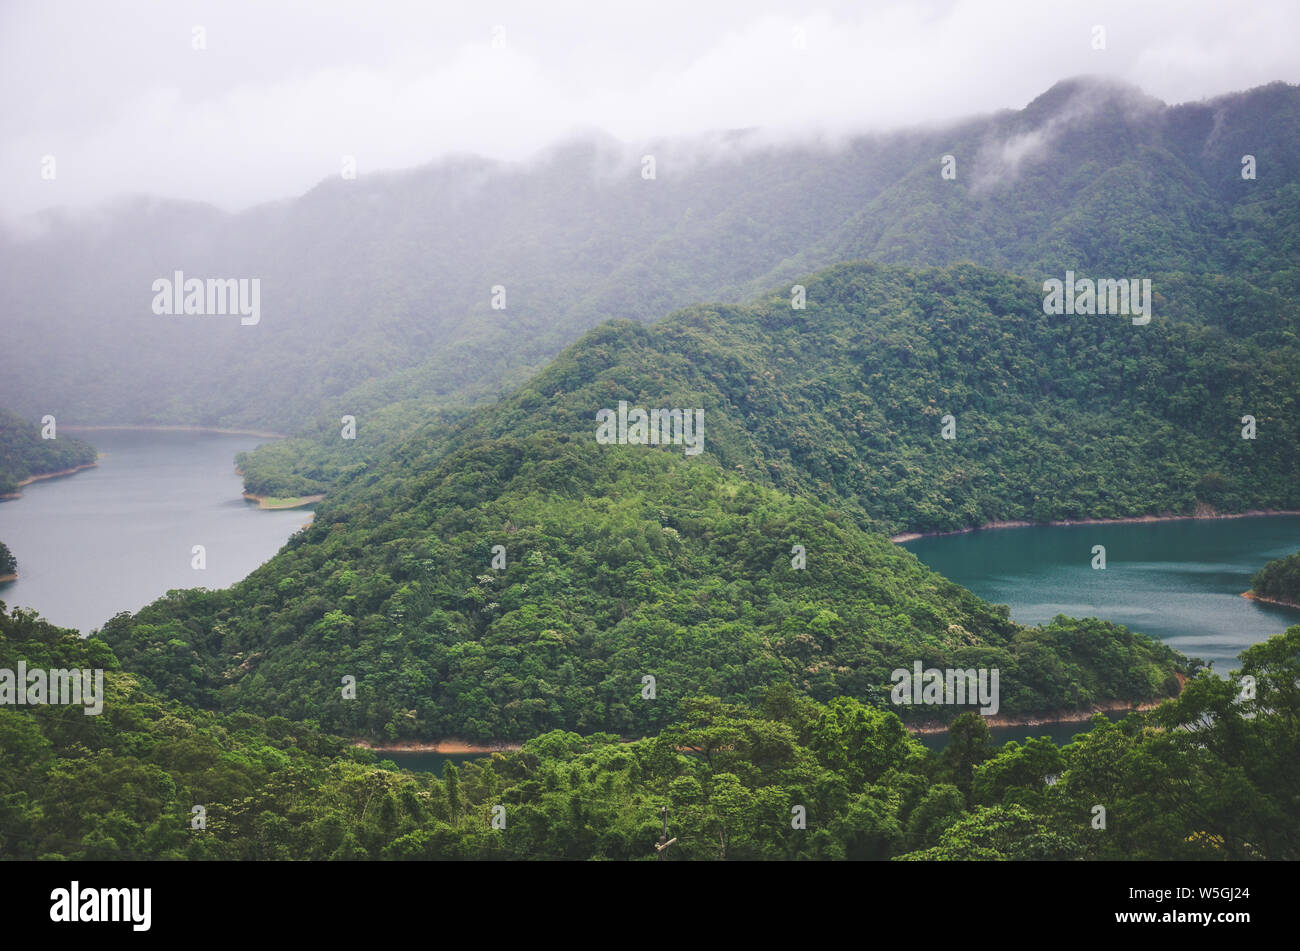 Misty Landschaft durch Tausend Island Lake in Taiwan, Asien. See im Nebel durch tropischen Wald, Regenwald umgeben. Moody Wetter. Vintage Retro, hipster Style. Stockfoto